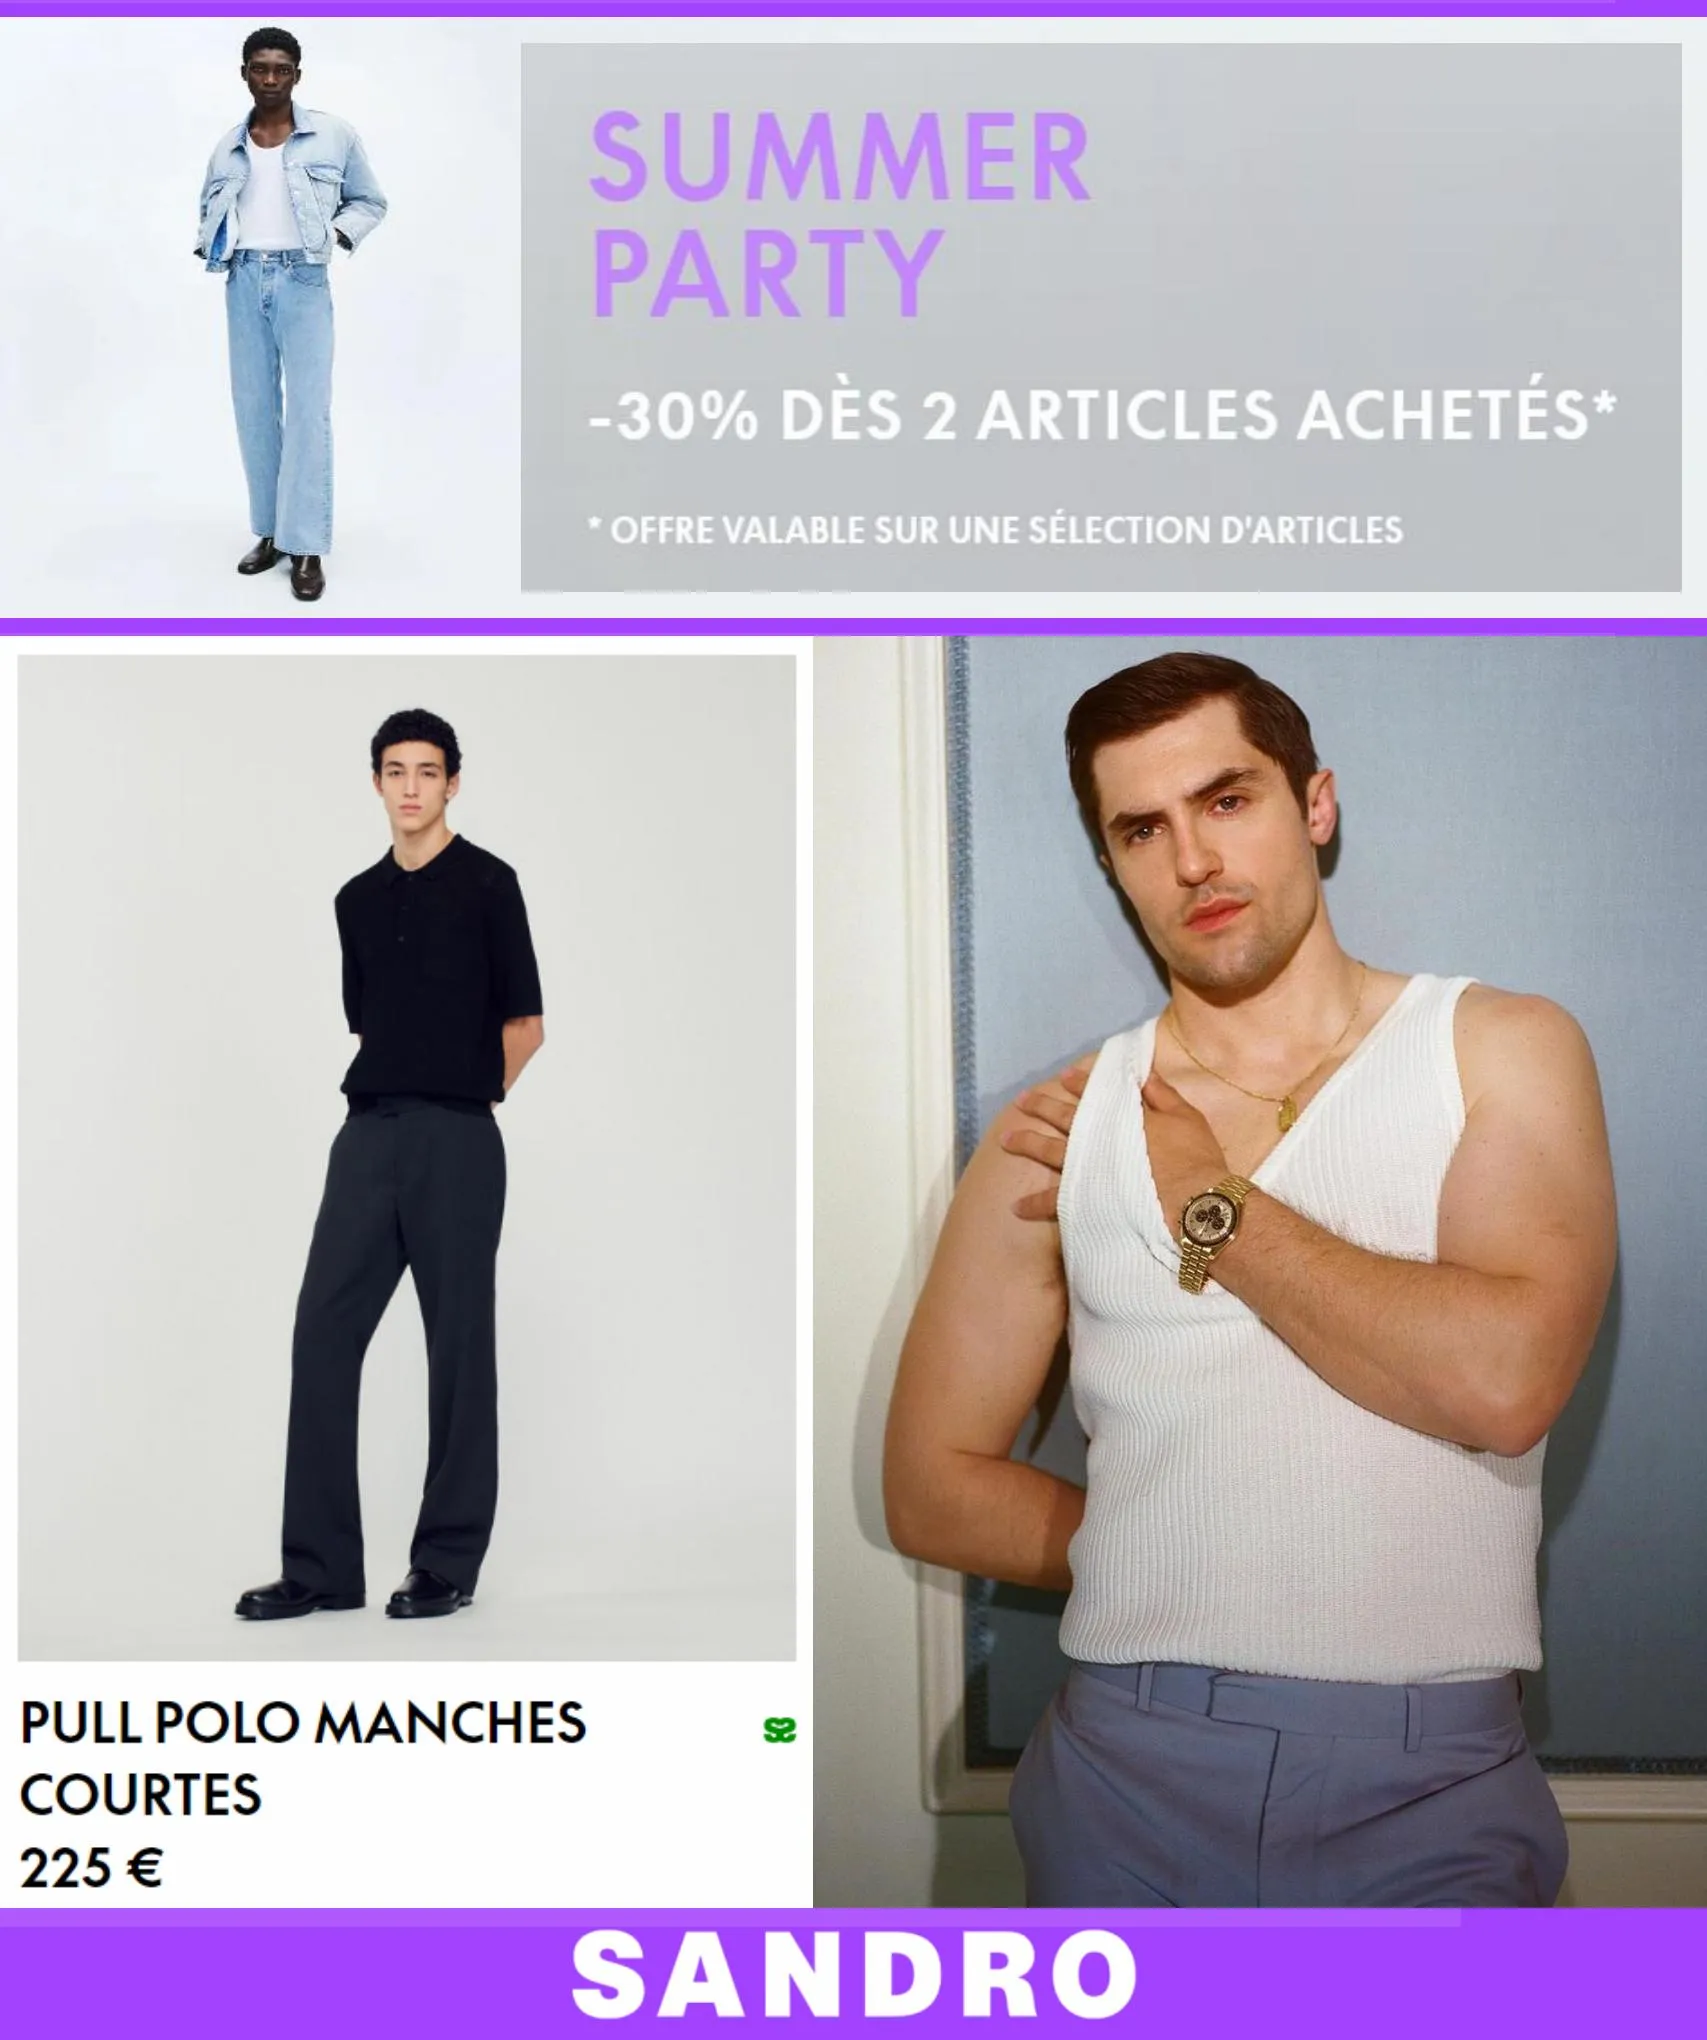 Catalogue Summer Party -30% dès 2 Articles achetés*, page 00001